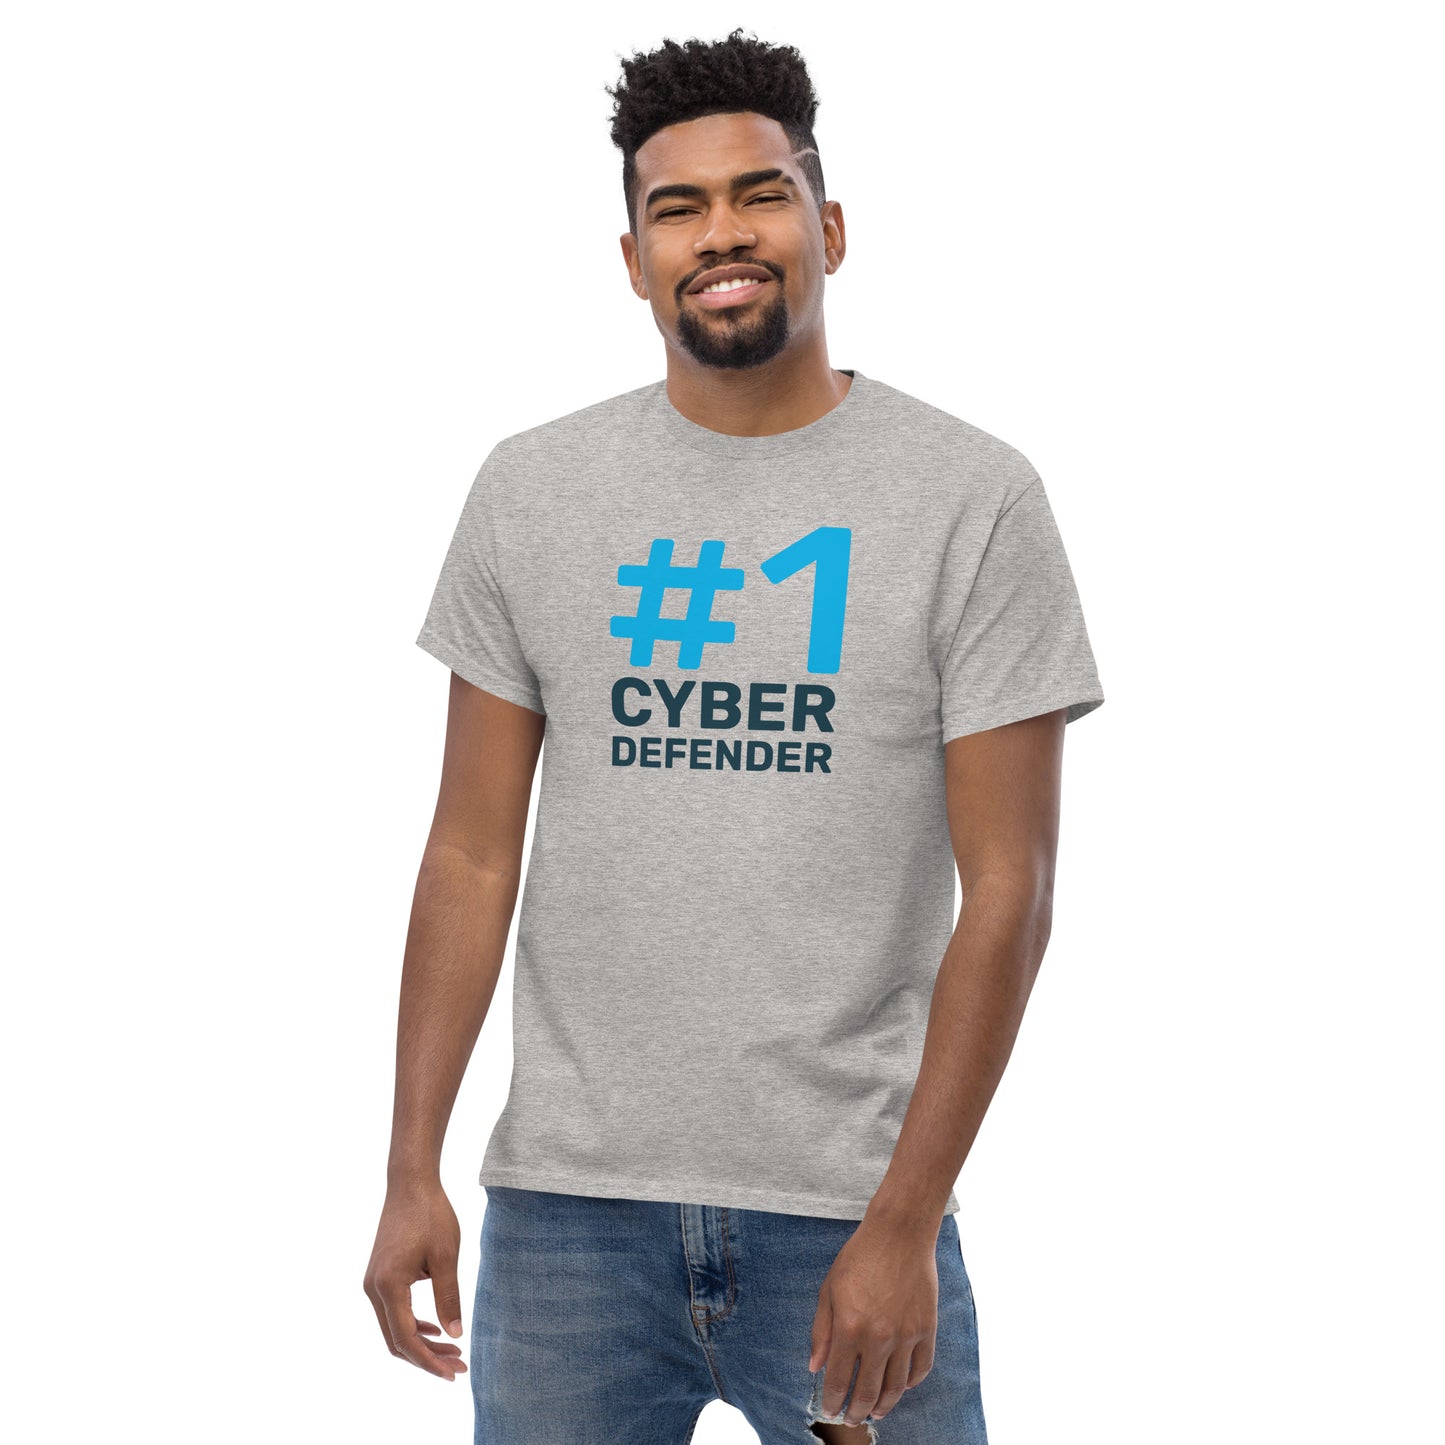 #1 Cyber Defender - Men's Classic Tee